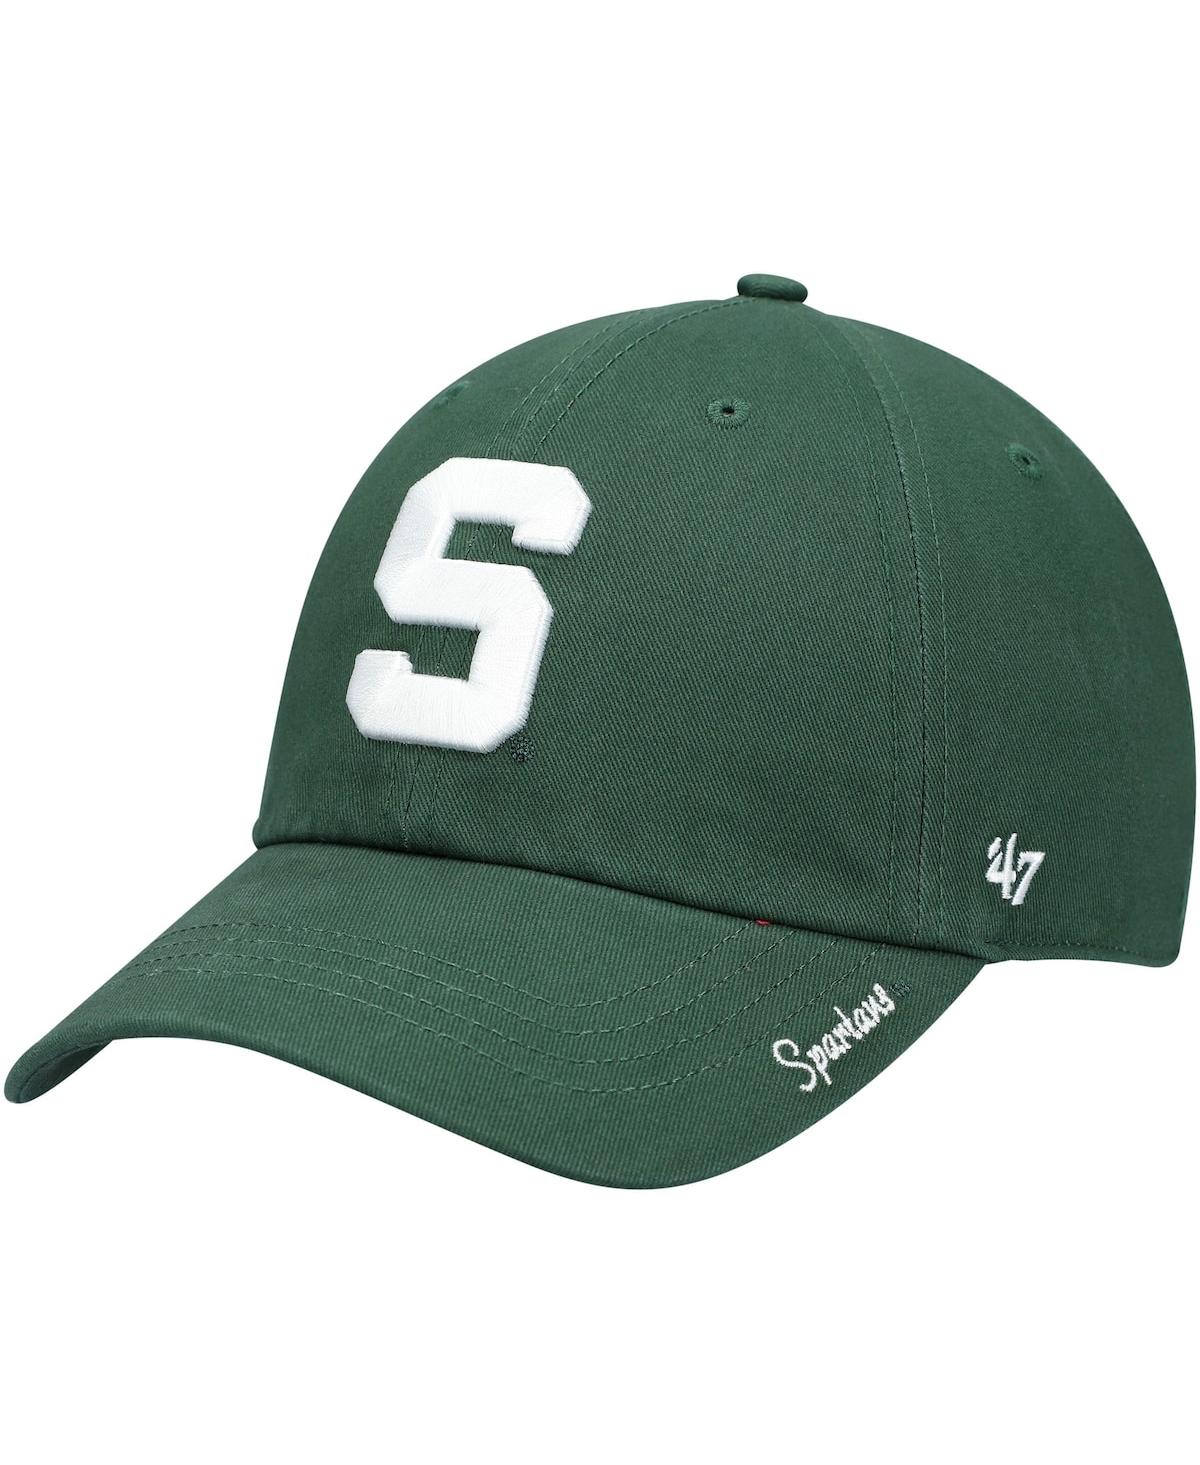 47 Brand Women's '47 Green Michigan State Spartans Team Miata Clean Up Adjustable Hat